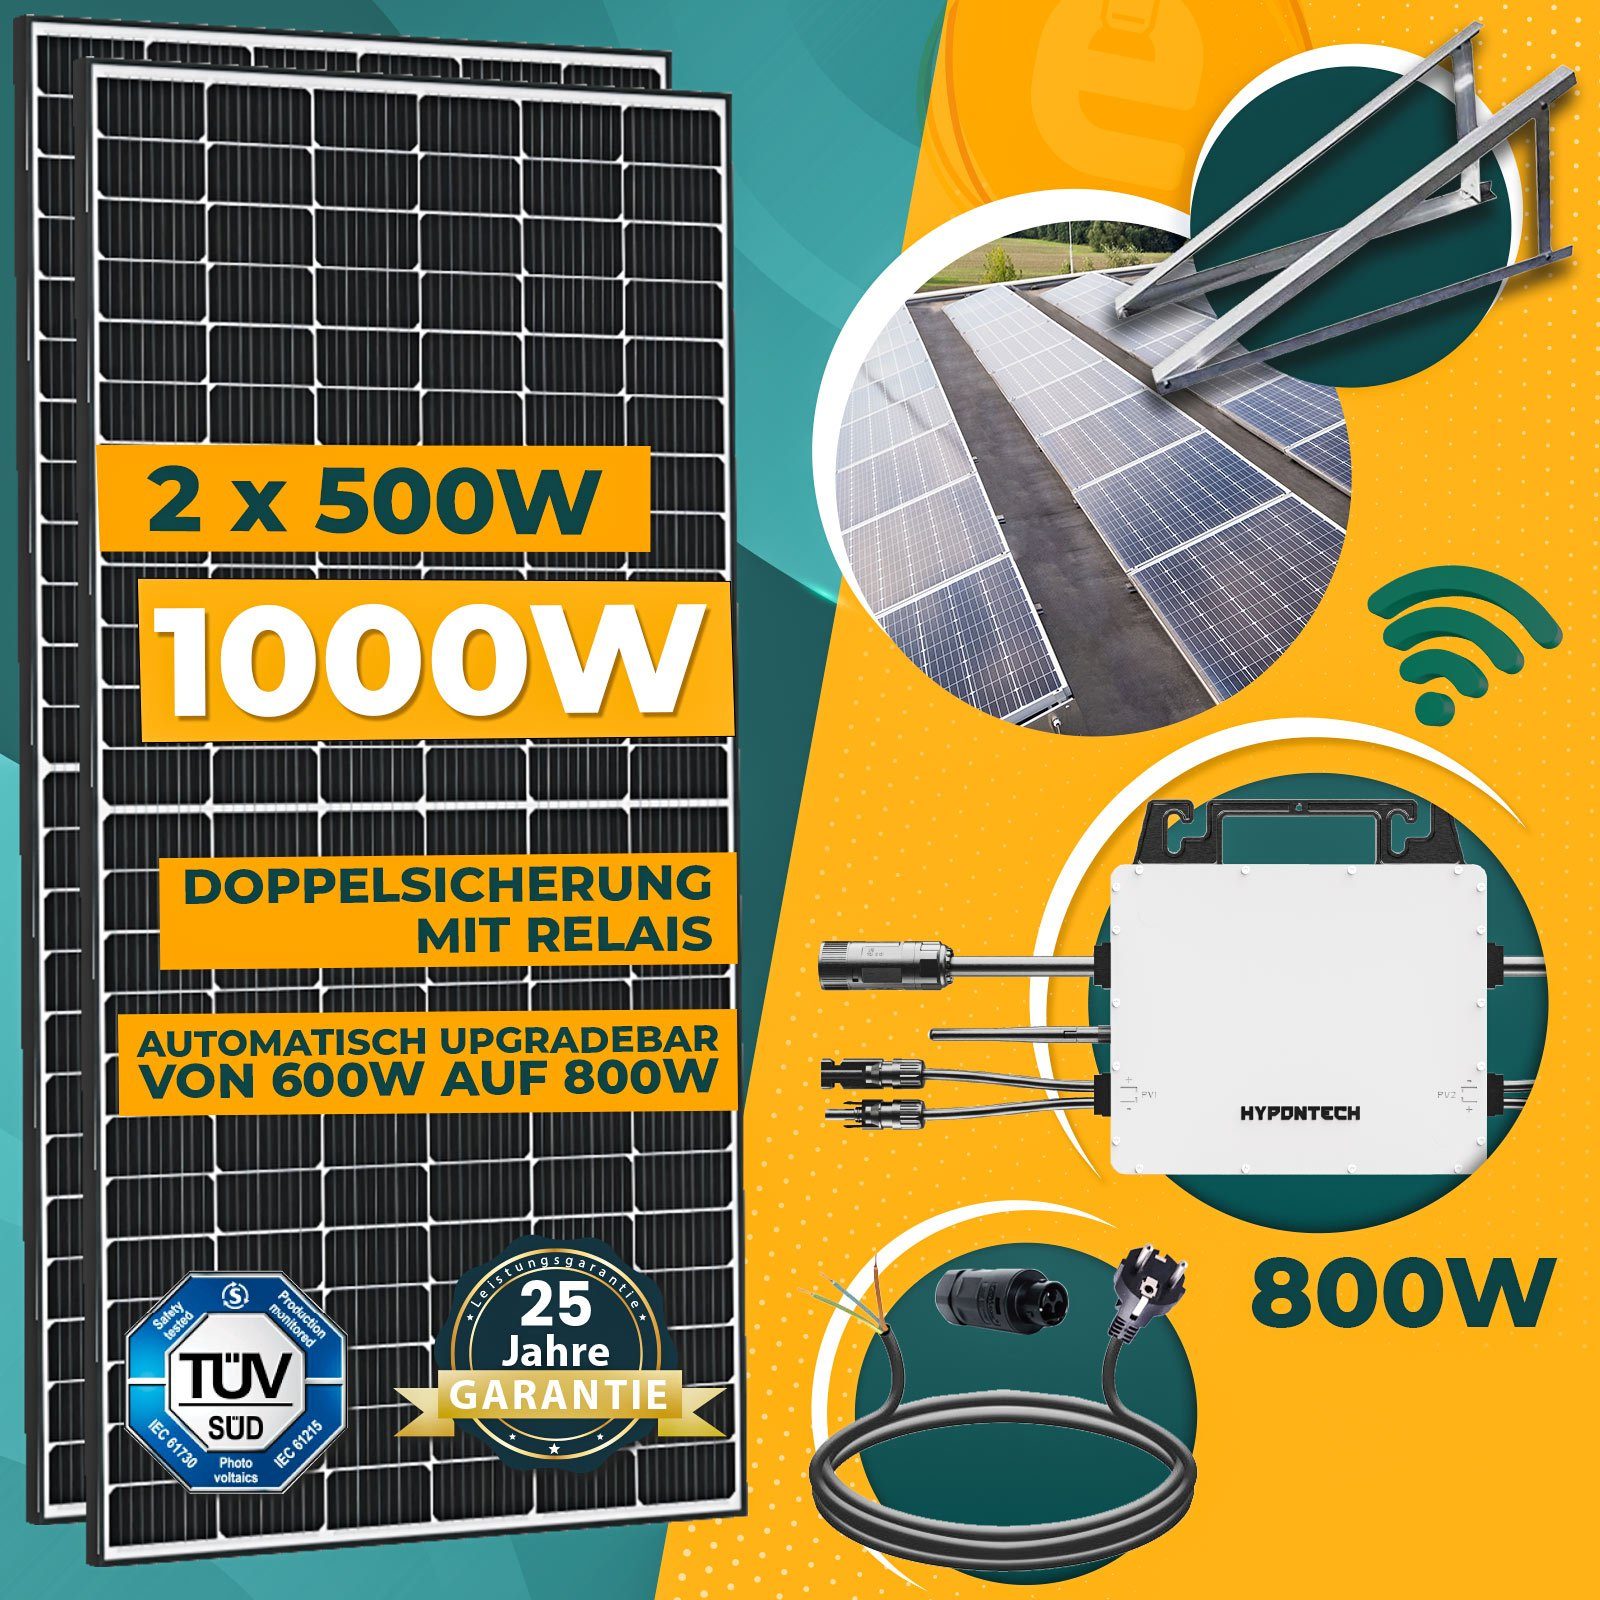 Schuko PV-Montage 800W Süd Balkonkraftwerk Hypontech Solaranlage Solarmodule, 500W Upgradefähiger WIFI 5M Stecker und Basis Wechselrichter, Komplettset Aufständerung inkl. 1000W enprovesolar